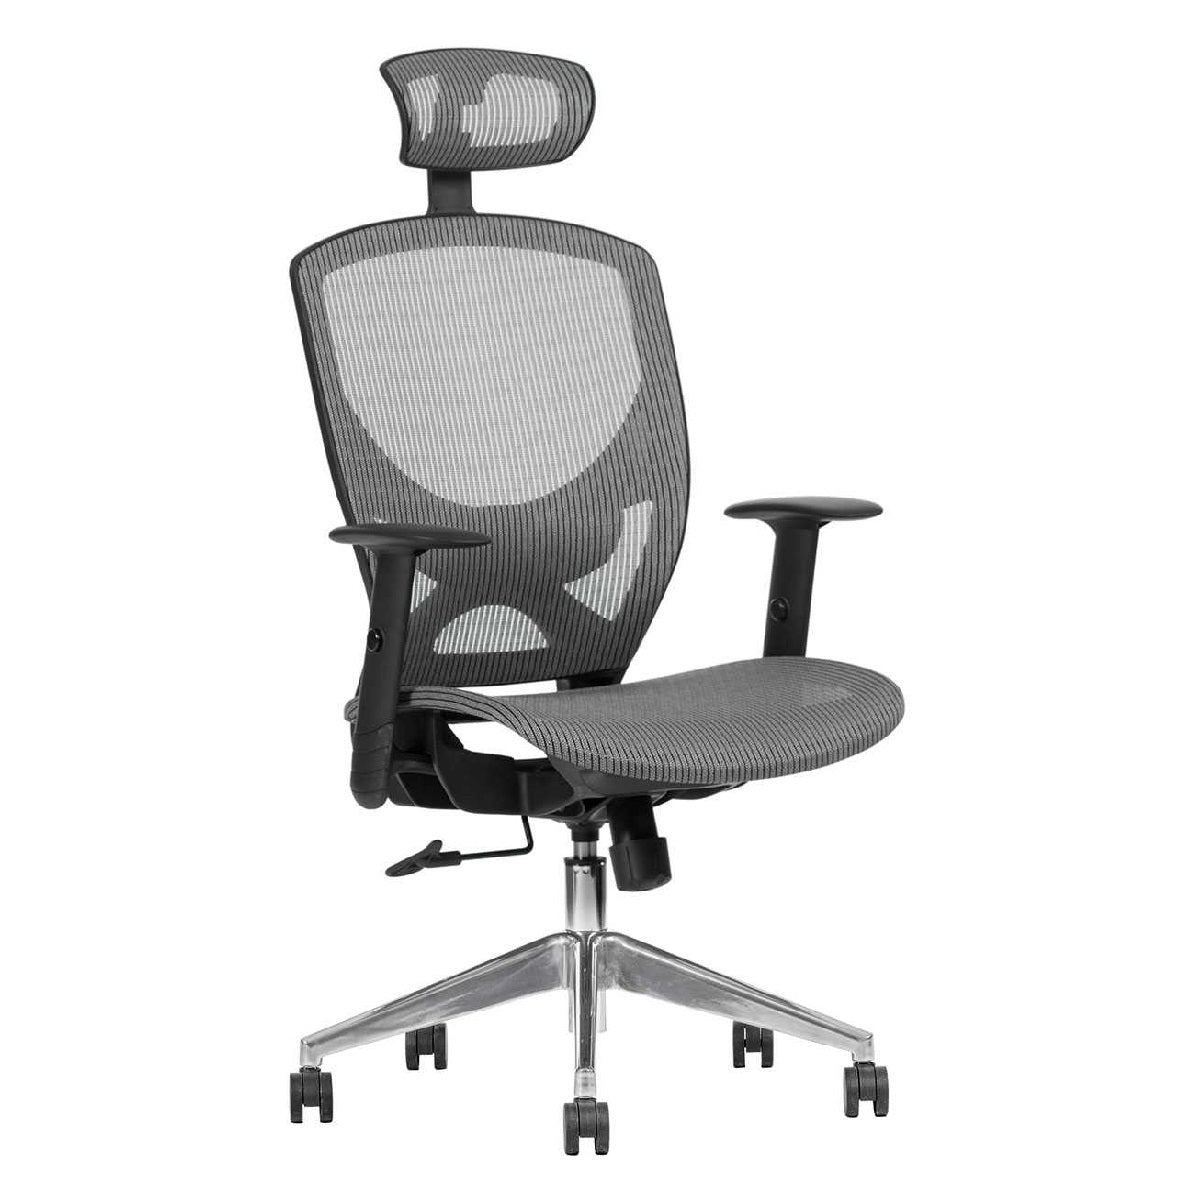 Sillón ejecutivo Matrix respaldo alto y asiento tapizado en mesh con base aluminio